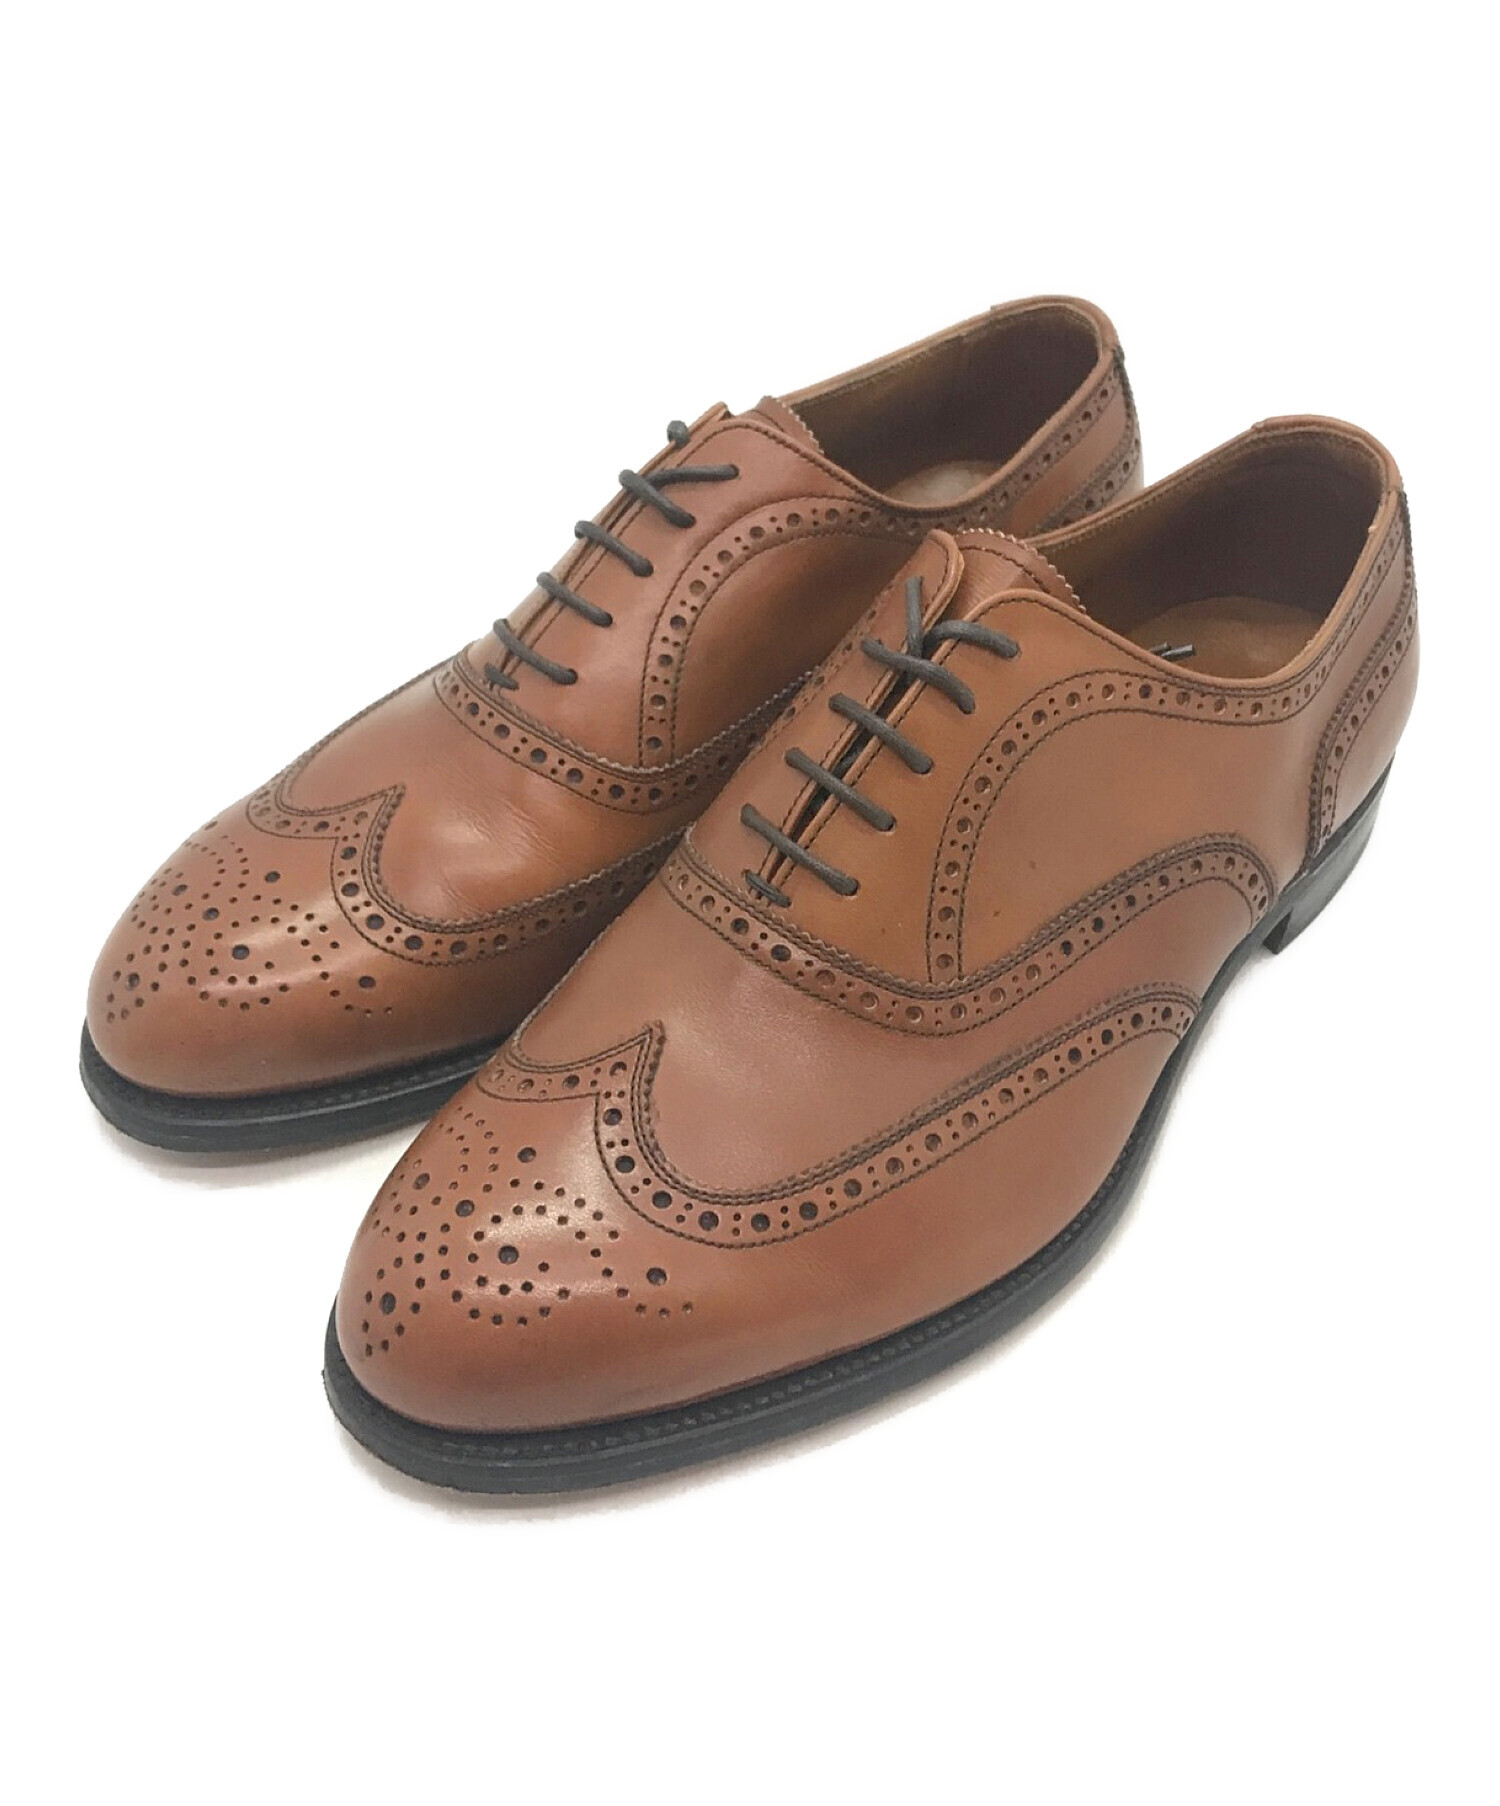 SCOTCH GRAIN (スコッチグレイン) ウィングチップフルブローグシューズ / 革靴 / レザーシューズ ブラウン サイズ:25.5㎝